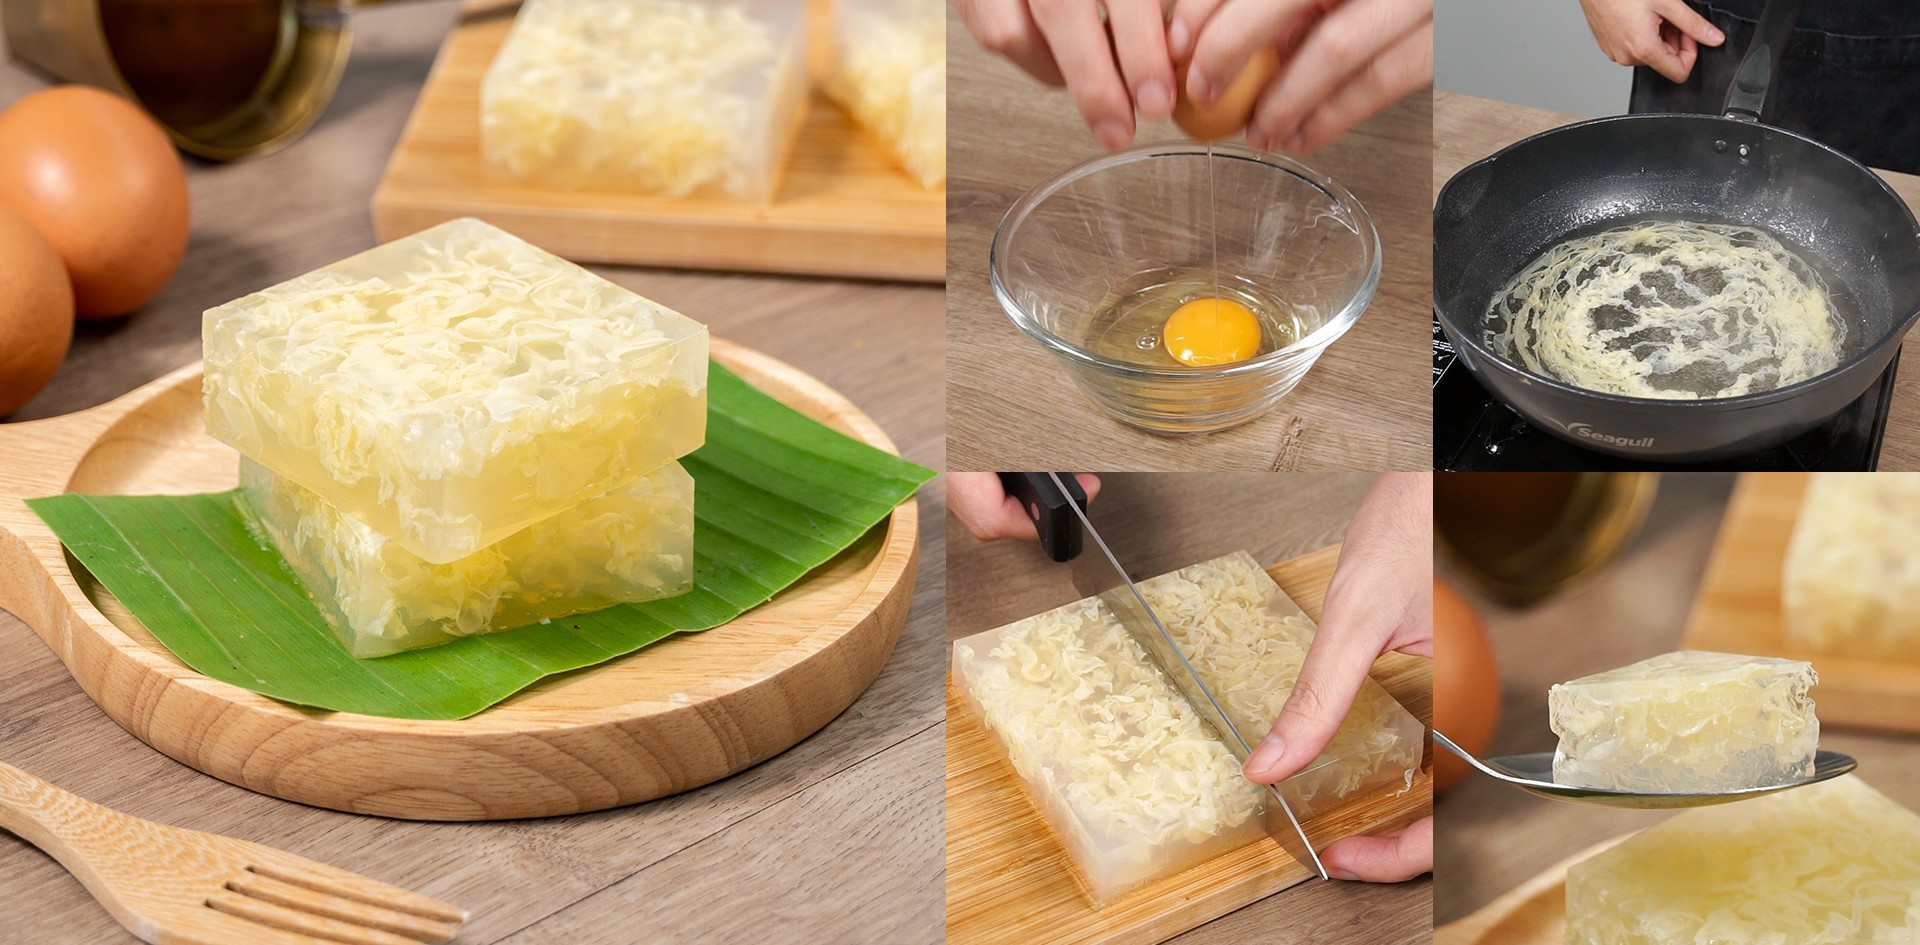 วิธีทำ “วุ้นไข่” เมนูขนมไทยหายาก รสชาติหวานหอม สวยงามอร่ามตา เมนูอาหารว่าง